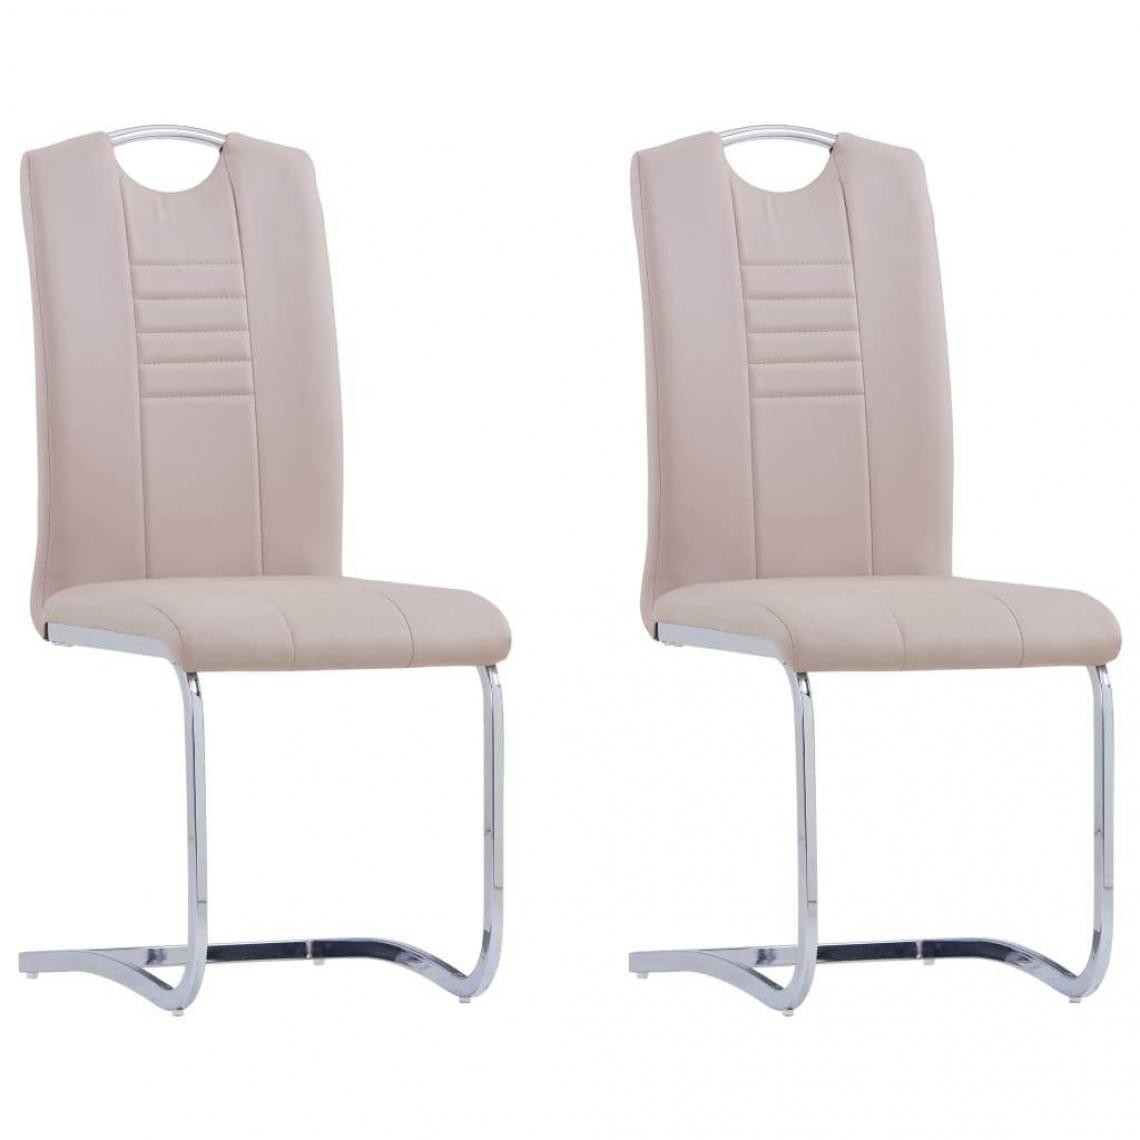 Decoshop26 - Lot de 2 chaises de salle à manger cuisine cantilever design contemporain similicuir cappuccino CDS020310 - Chaises